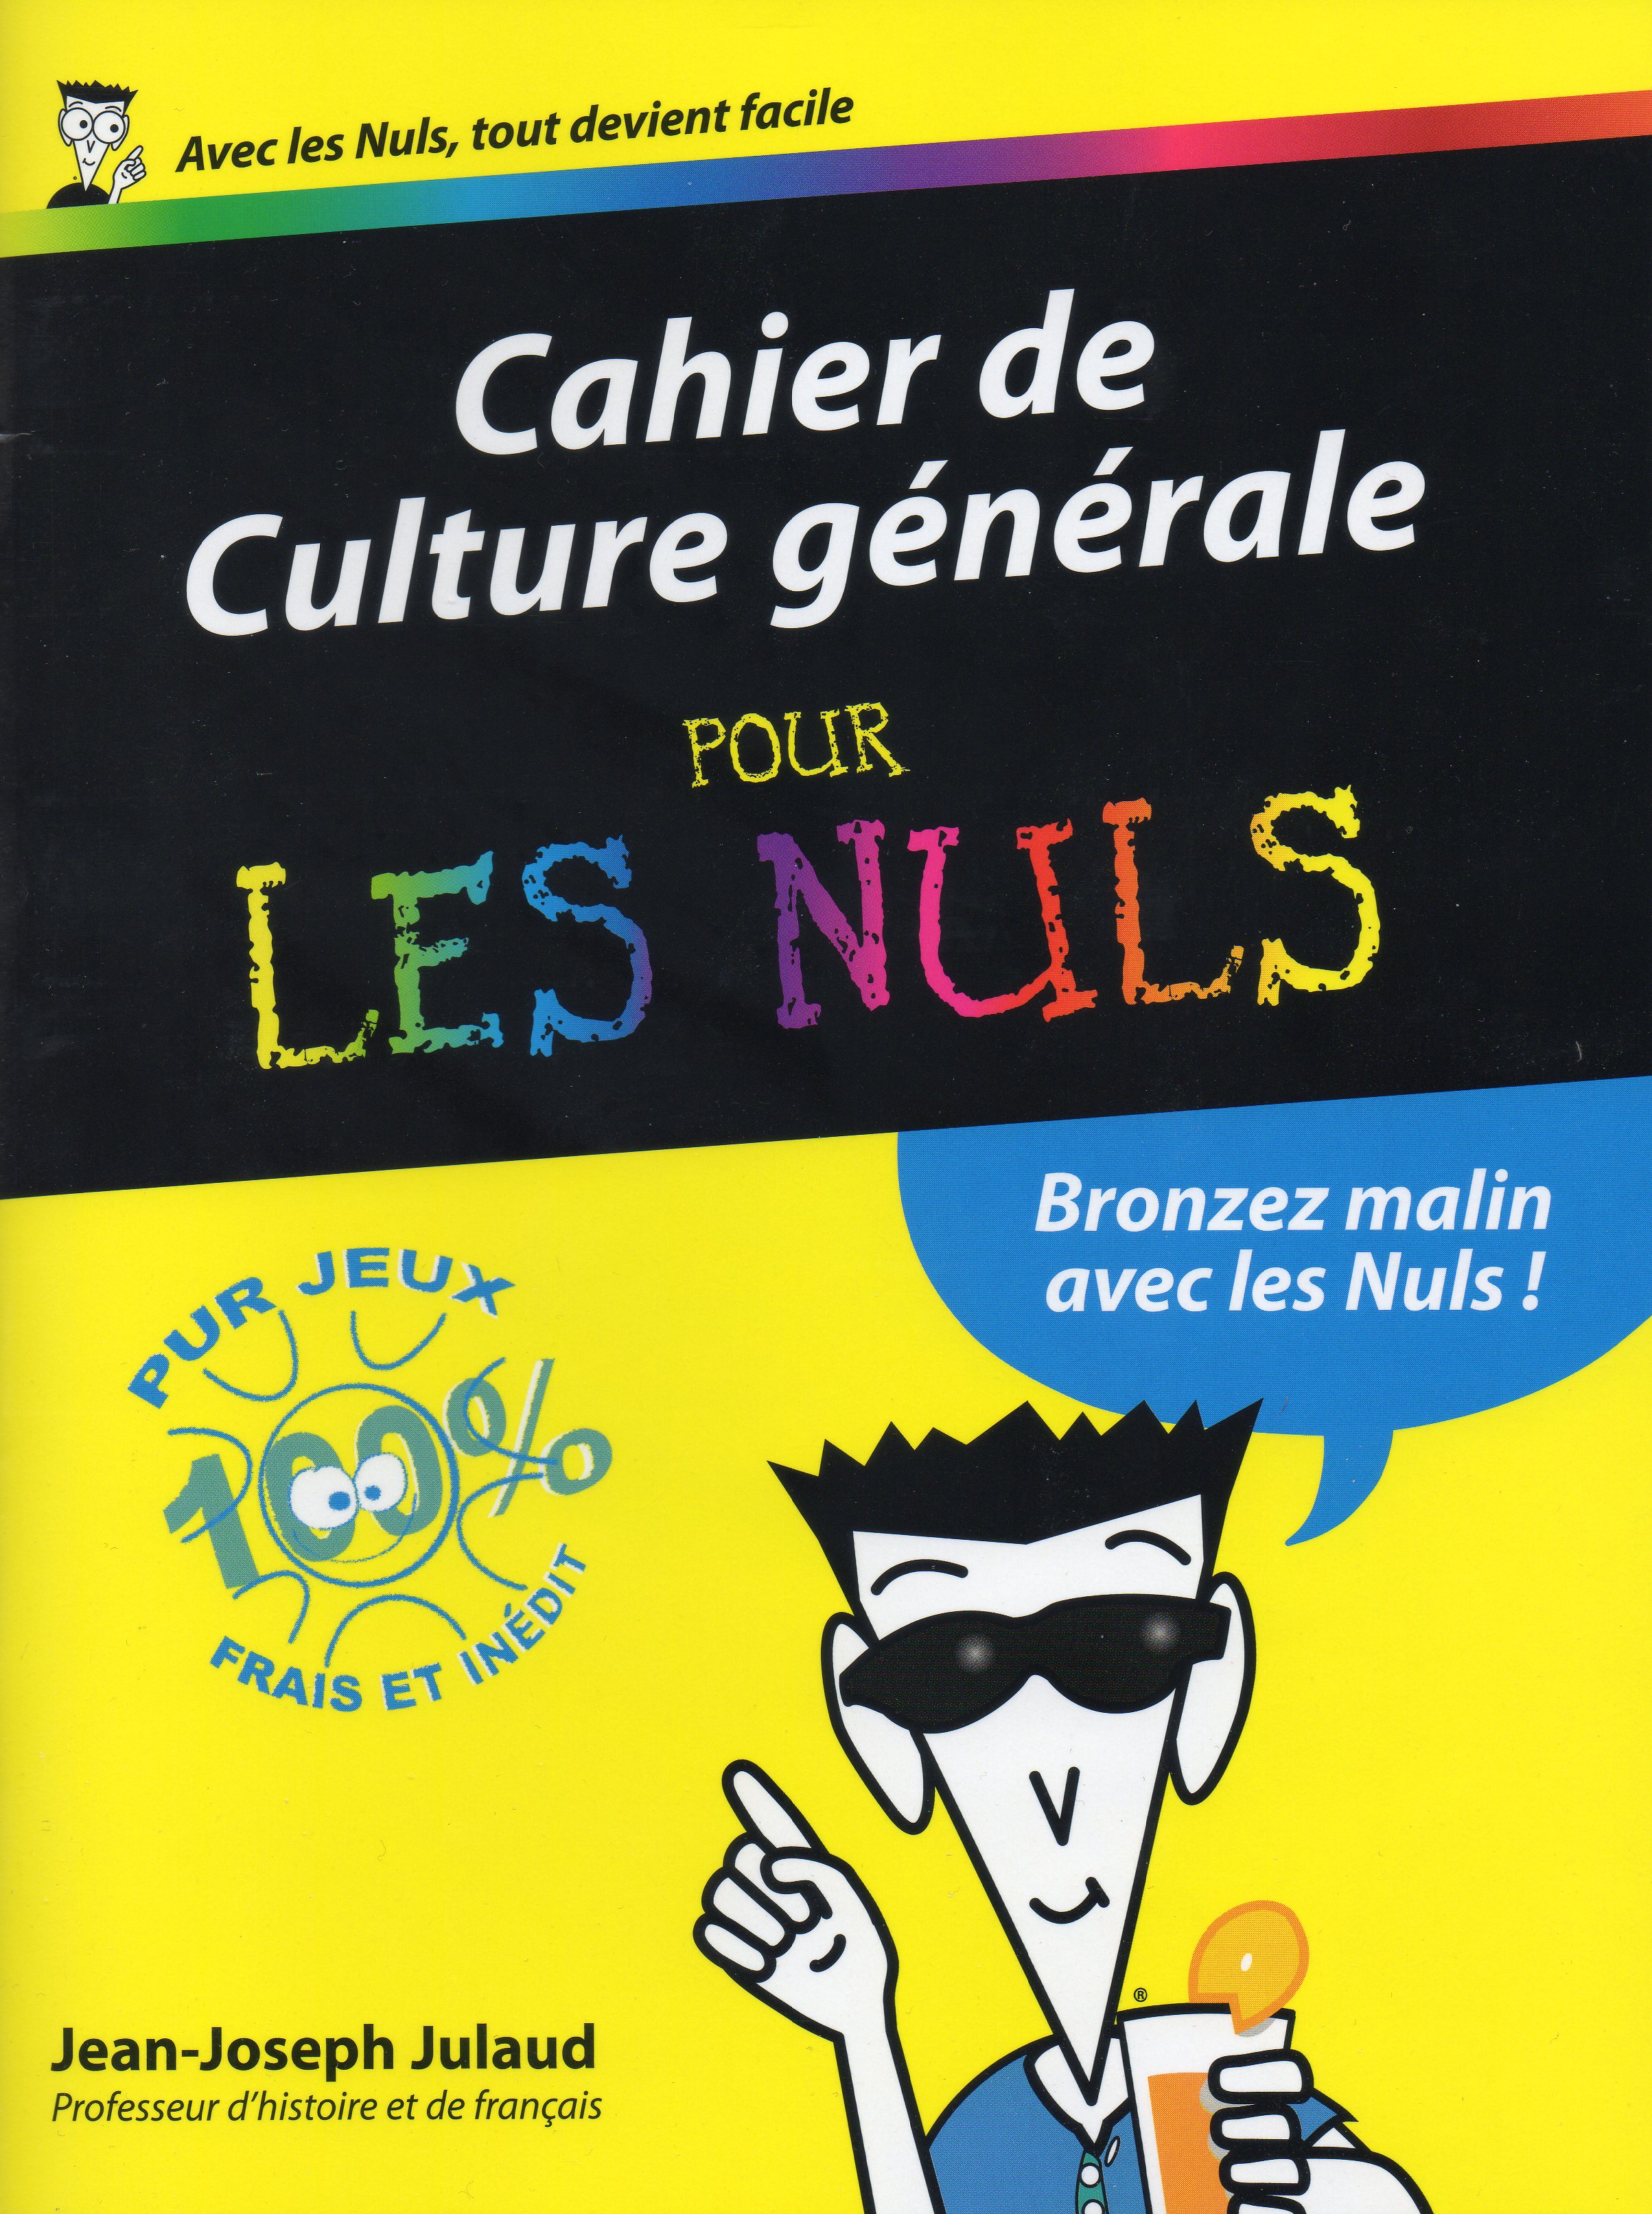 Cahier de culture générale 2012